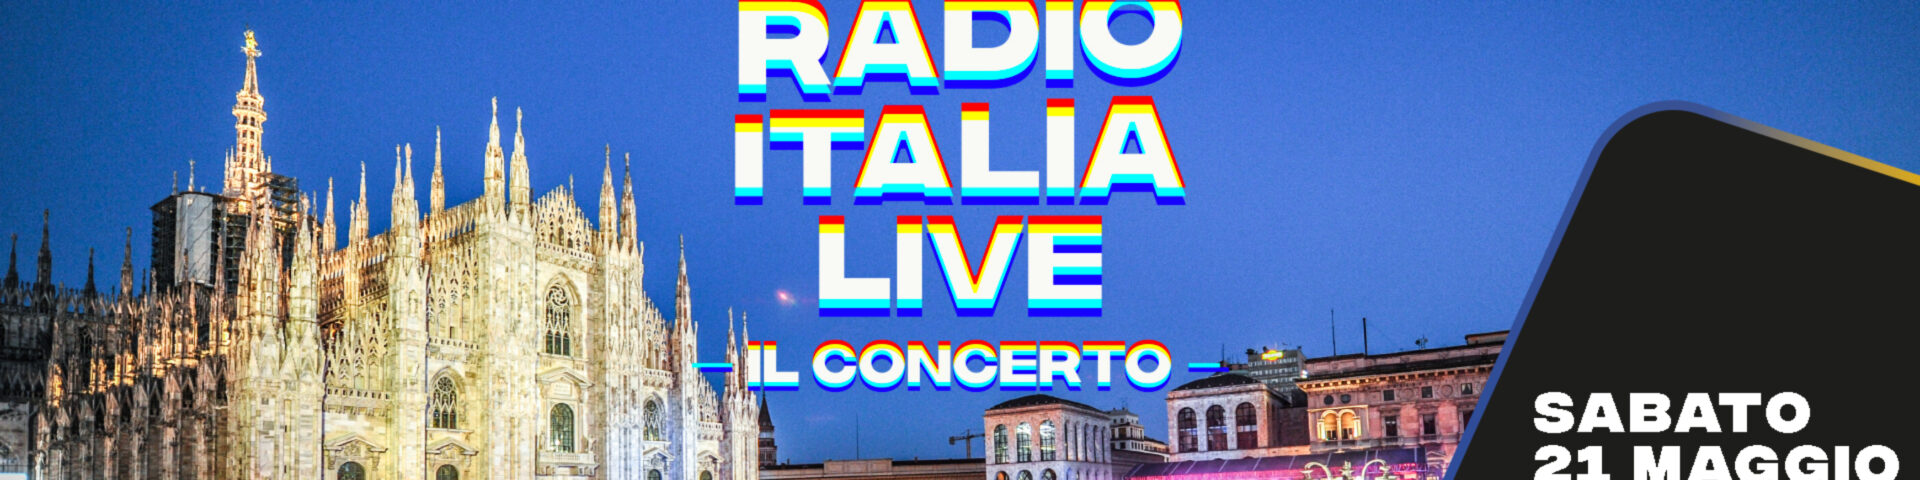 Radio Italia Live è in diretta o registrato?